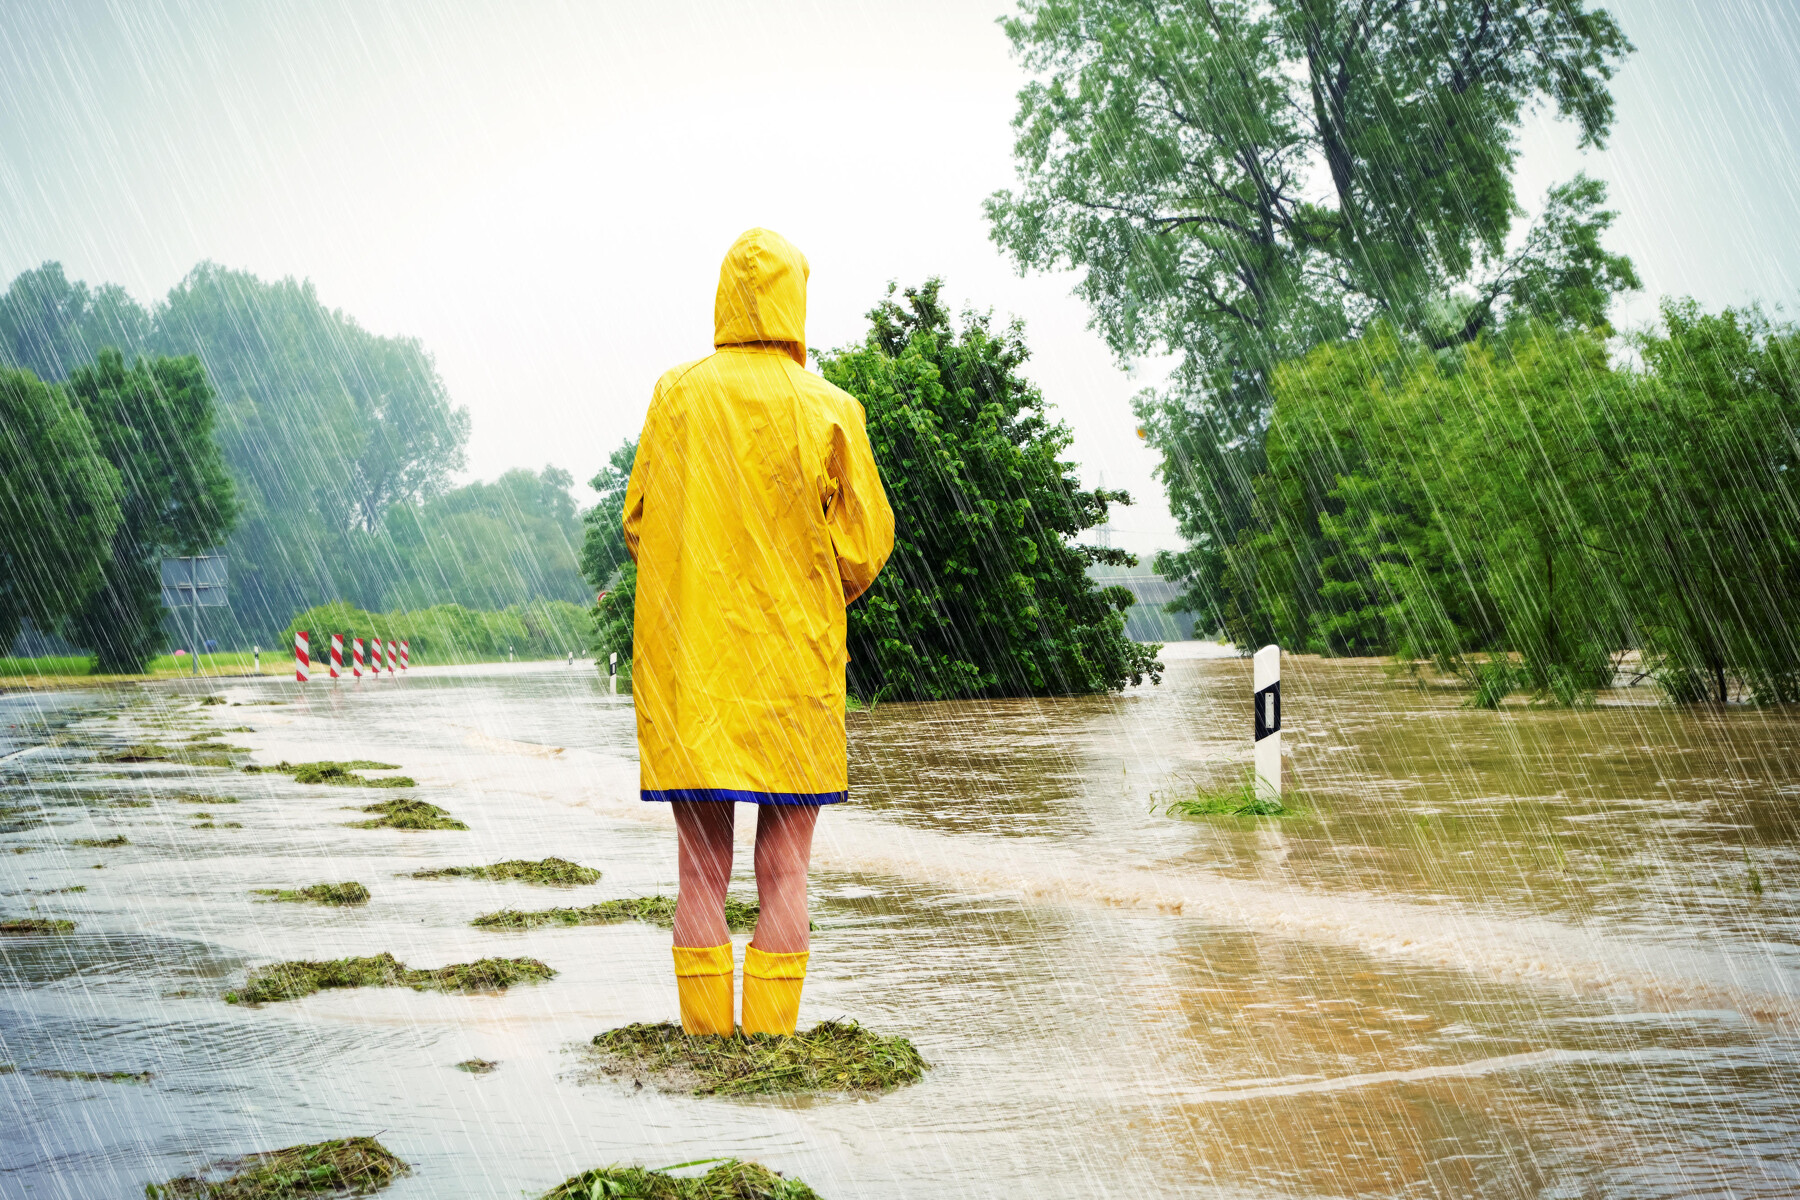 ชายสวมเสื้อกันฝนบนถนนที่ถูกน้ำท่วม